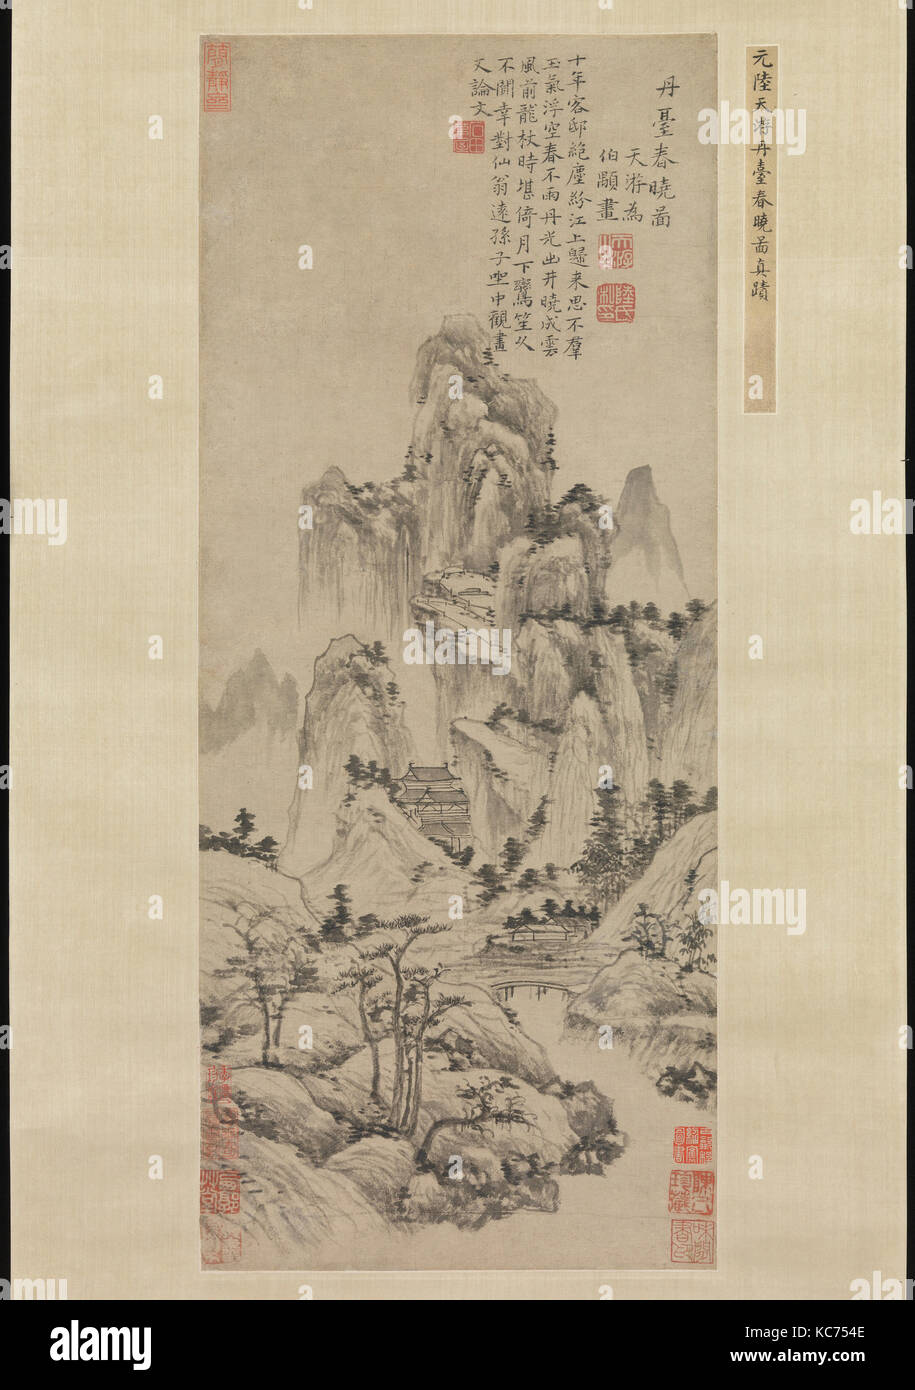 元 陸廣 丹臺春曉圖 軸, molla alba sopra l'Elisir terrazza, Lu Guang, ca. 1369 Foto Stock